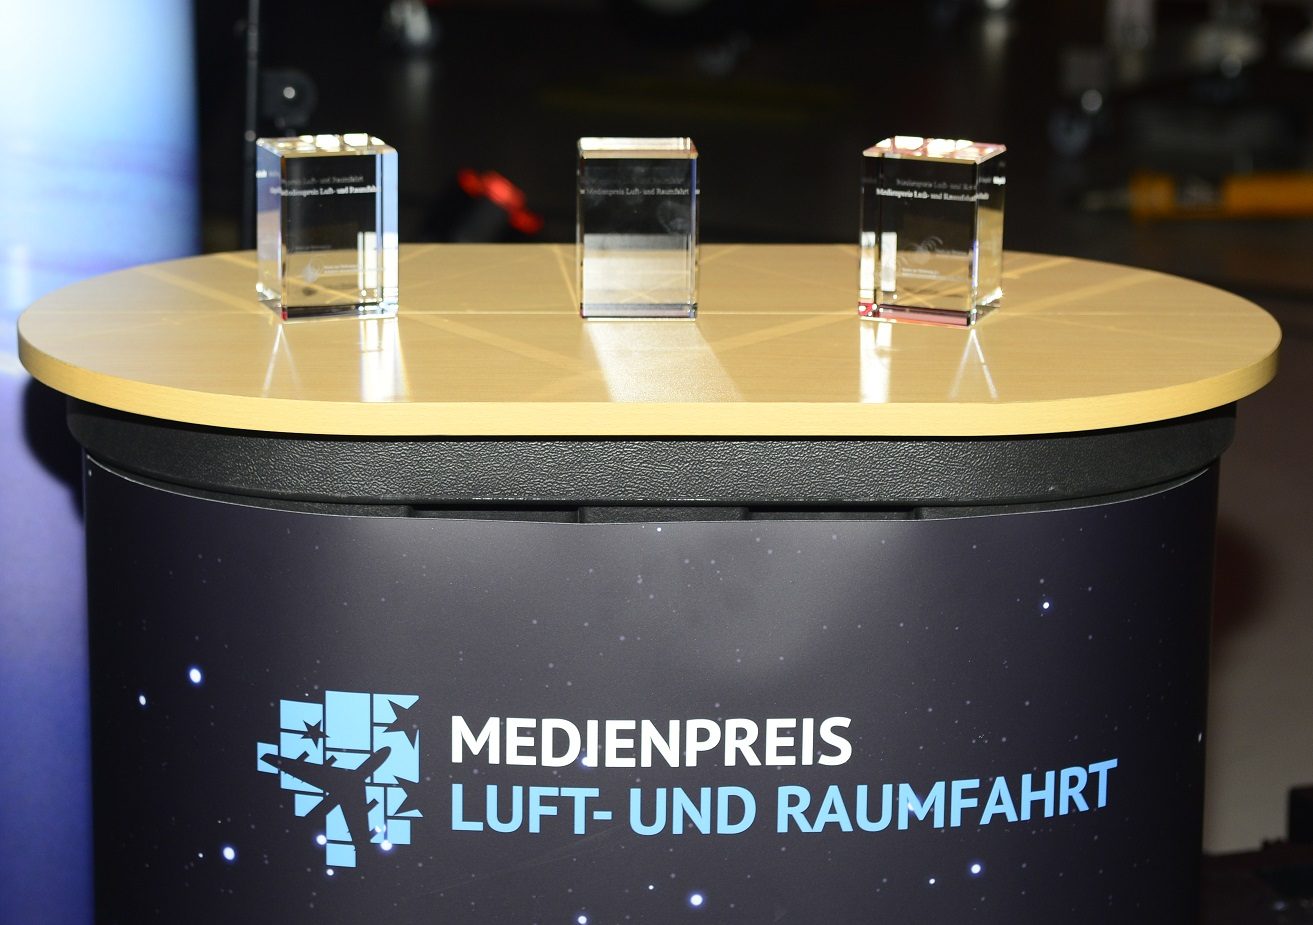  "Medienpreis Luft- und Raumfahrt" 2019